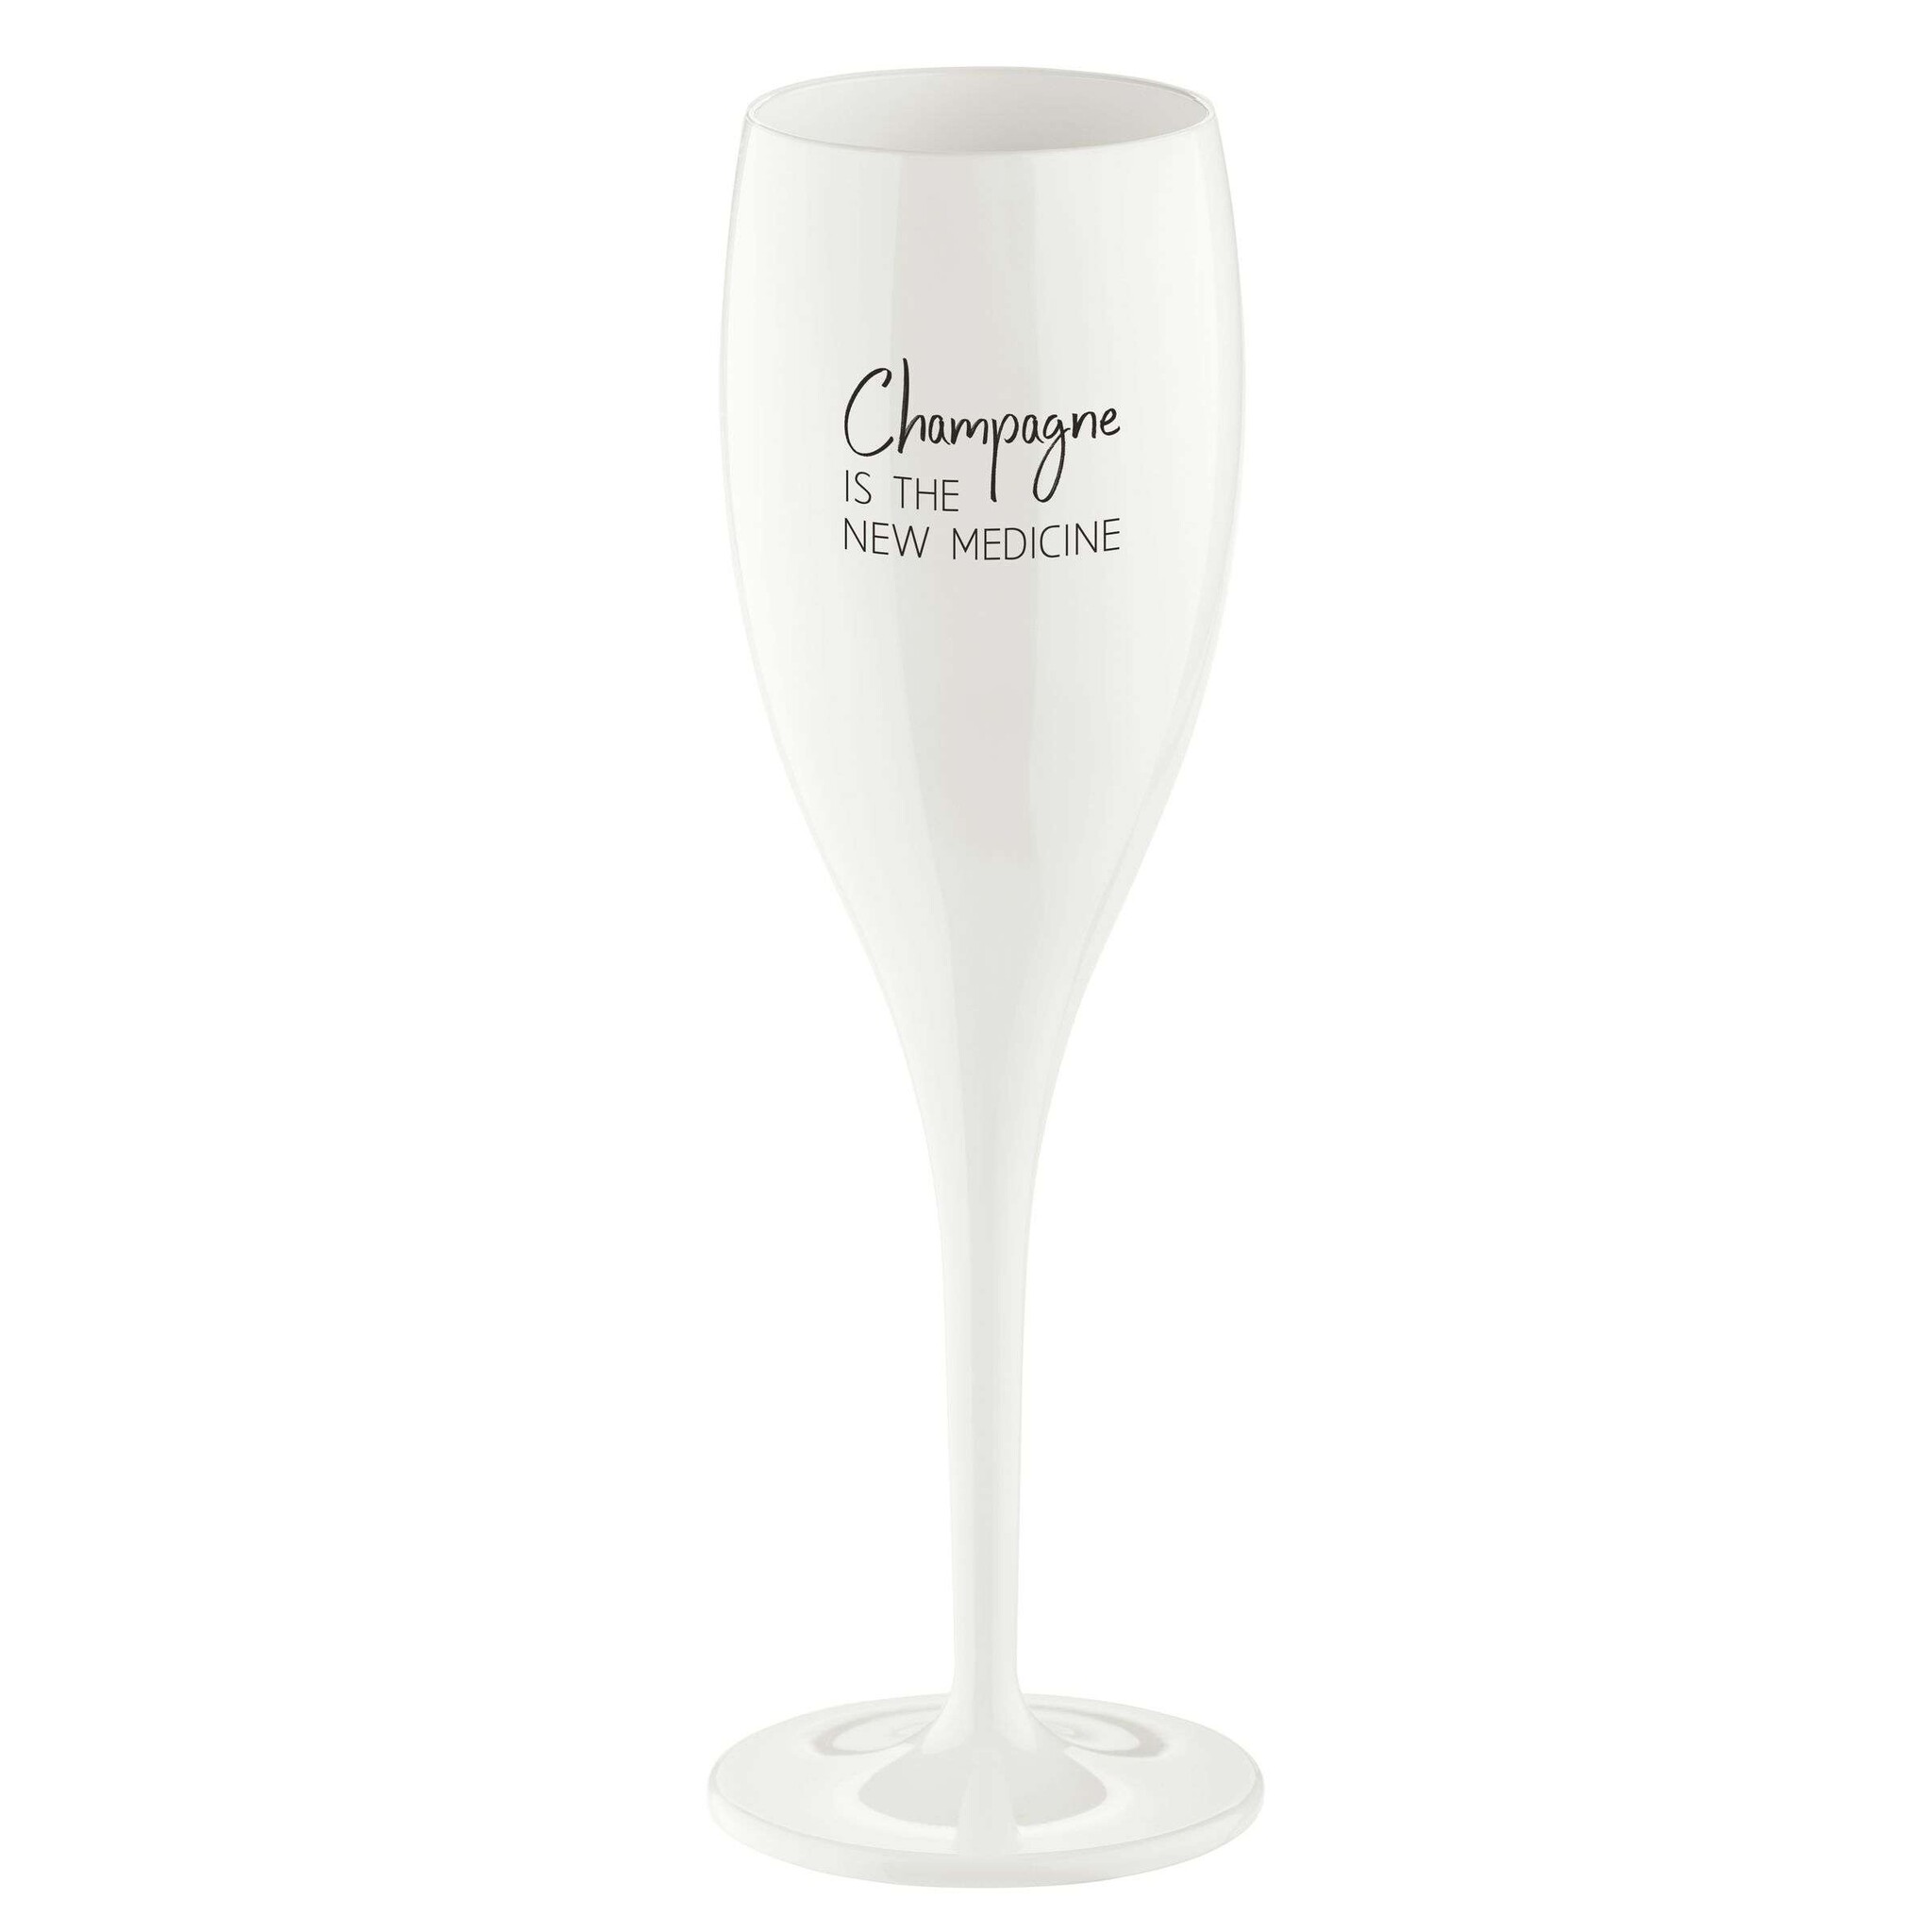 Koziol Superglas Cheers No. 1 Champagneglas Champagne The New Medicine